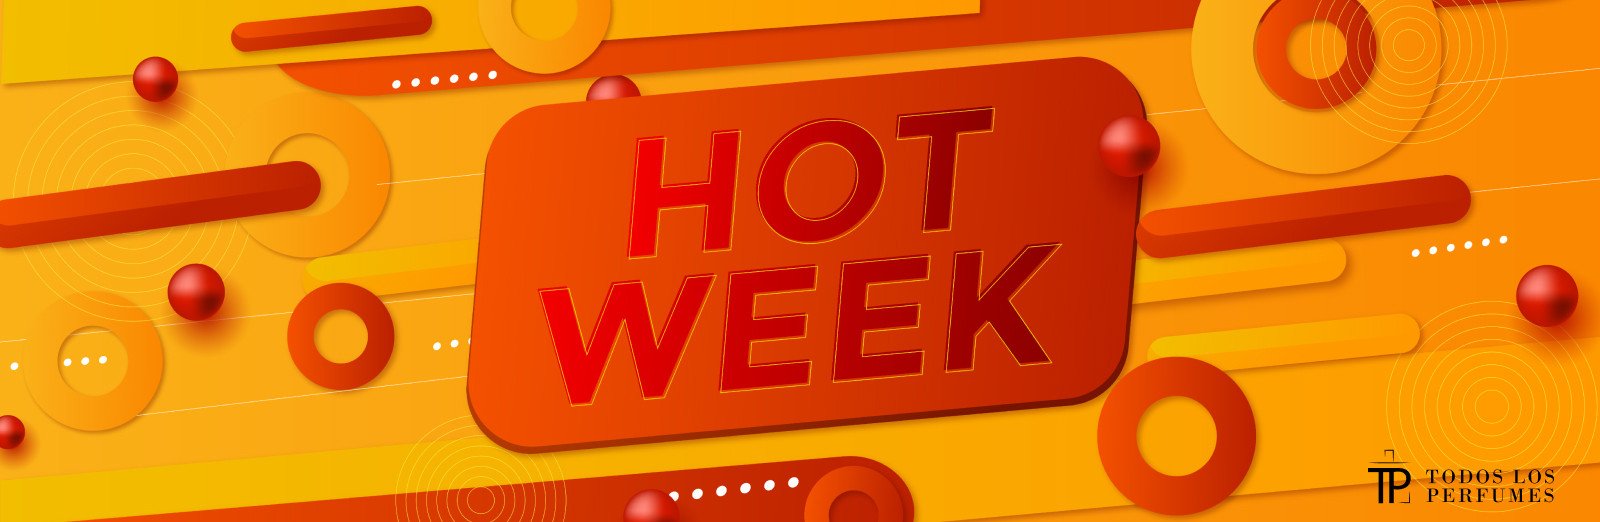 hot week